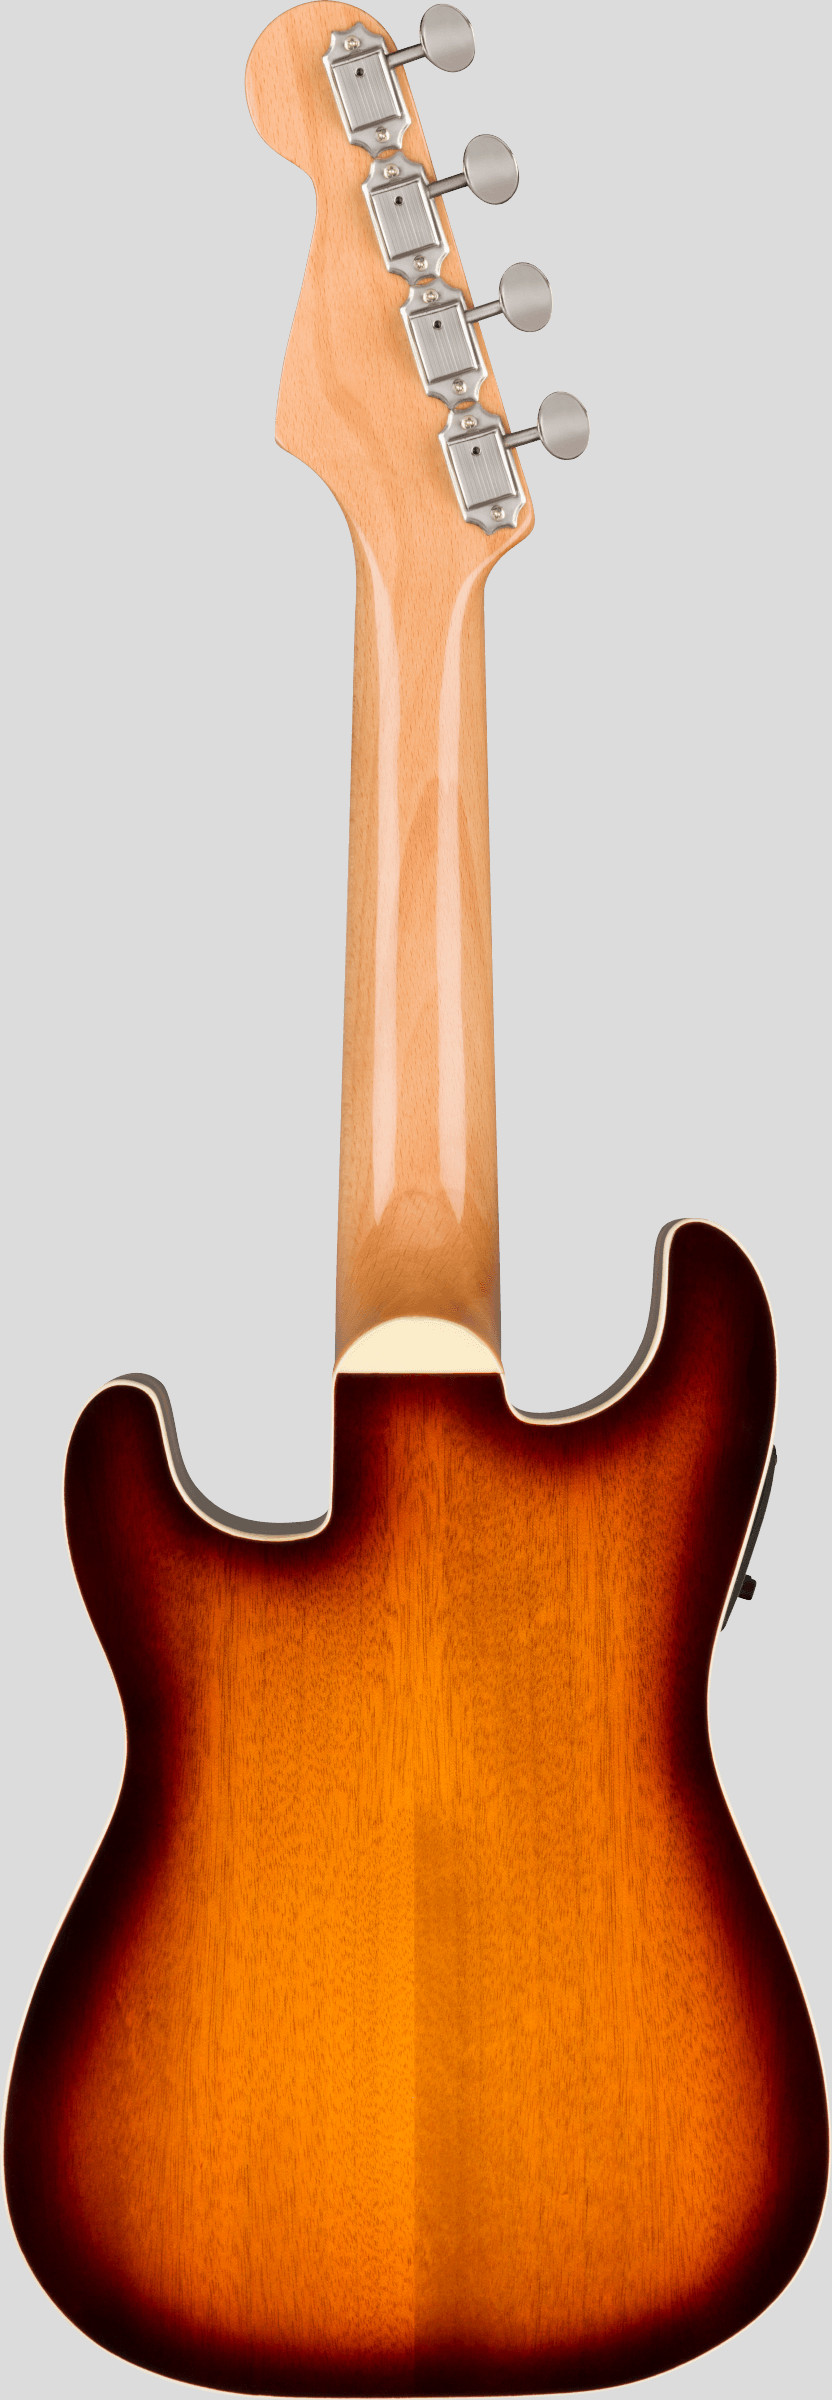 Fender Fullerton Stratocaster Concert Ukulele Sunburst 2